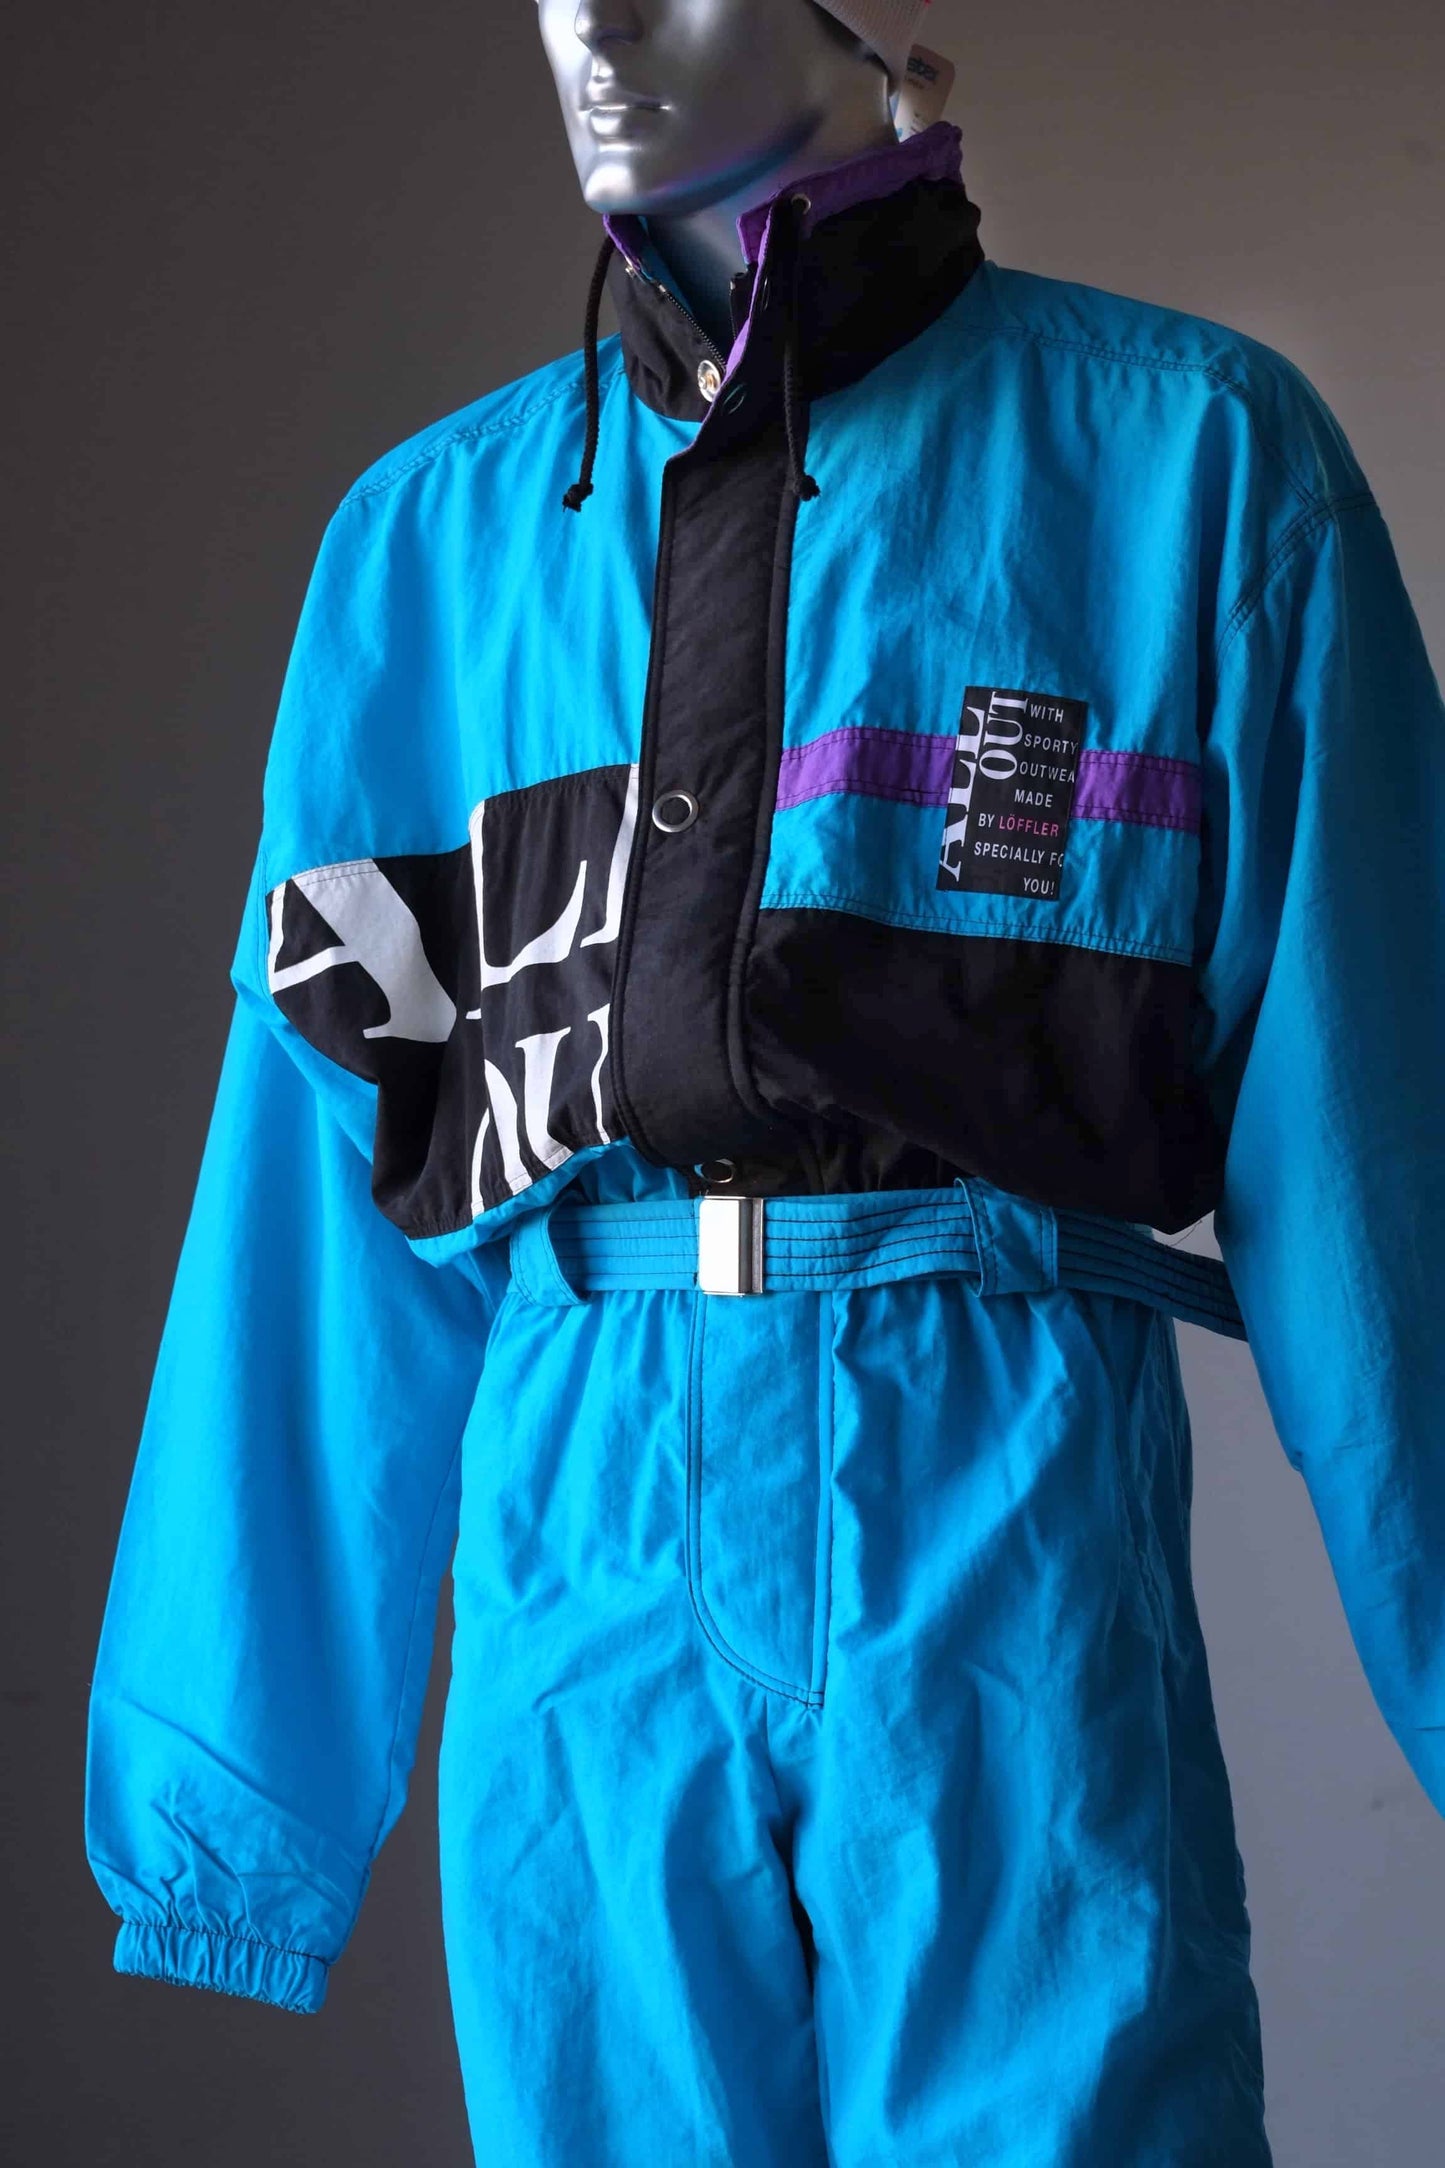 Vintage 90's Men's Ski Suit blue